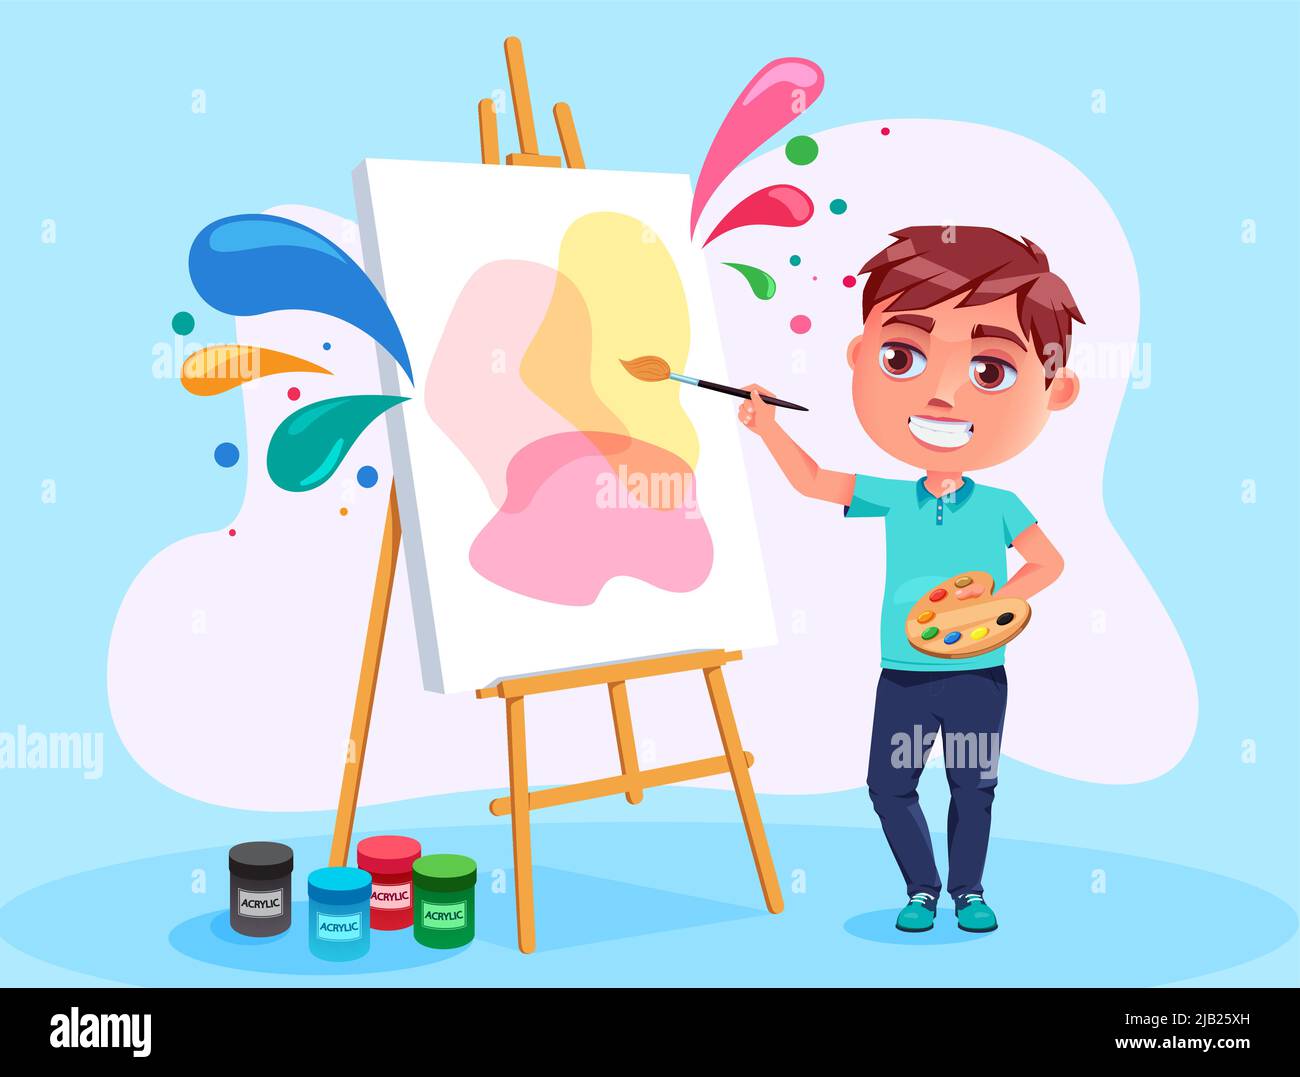 Dessin artistique de personnages vectoriels pour enfants. Artiste de garçon dans un geste de peinture heureux avec une décoration abstraite colorée pour la personne masculine créative. Illustration de Vecteur